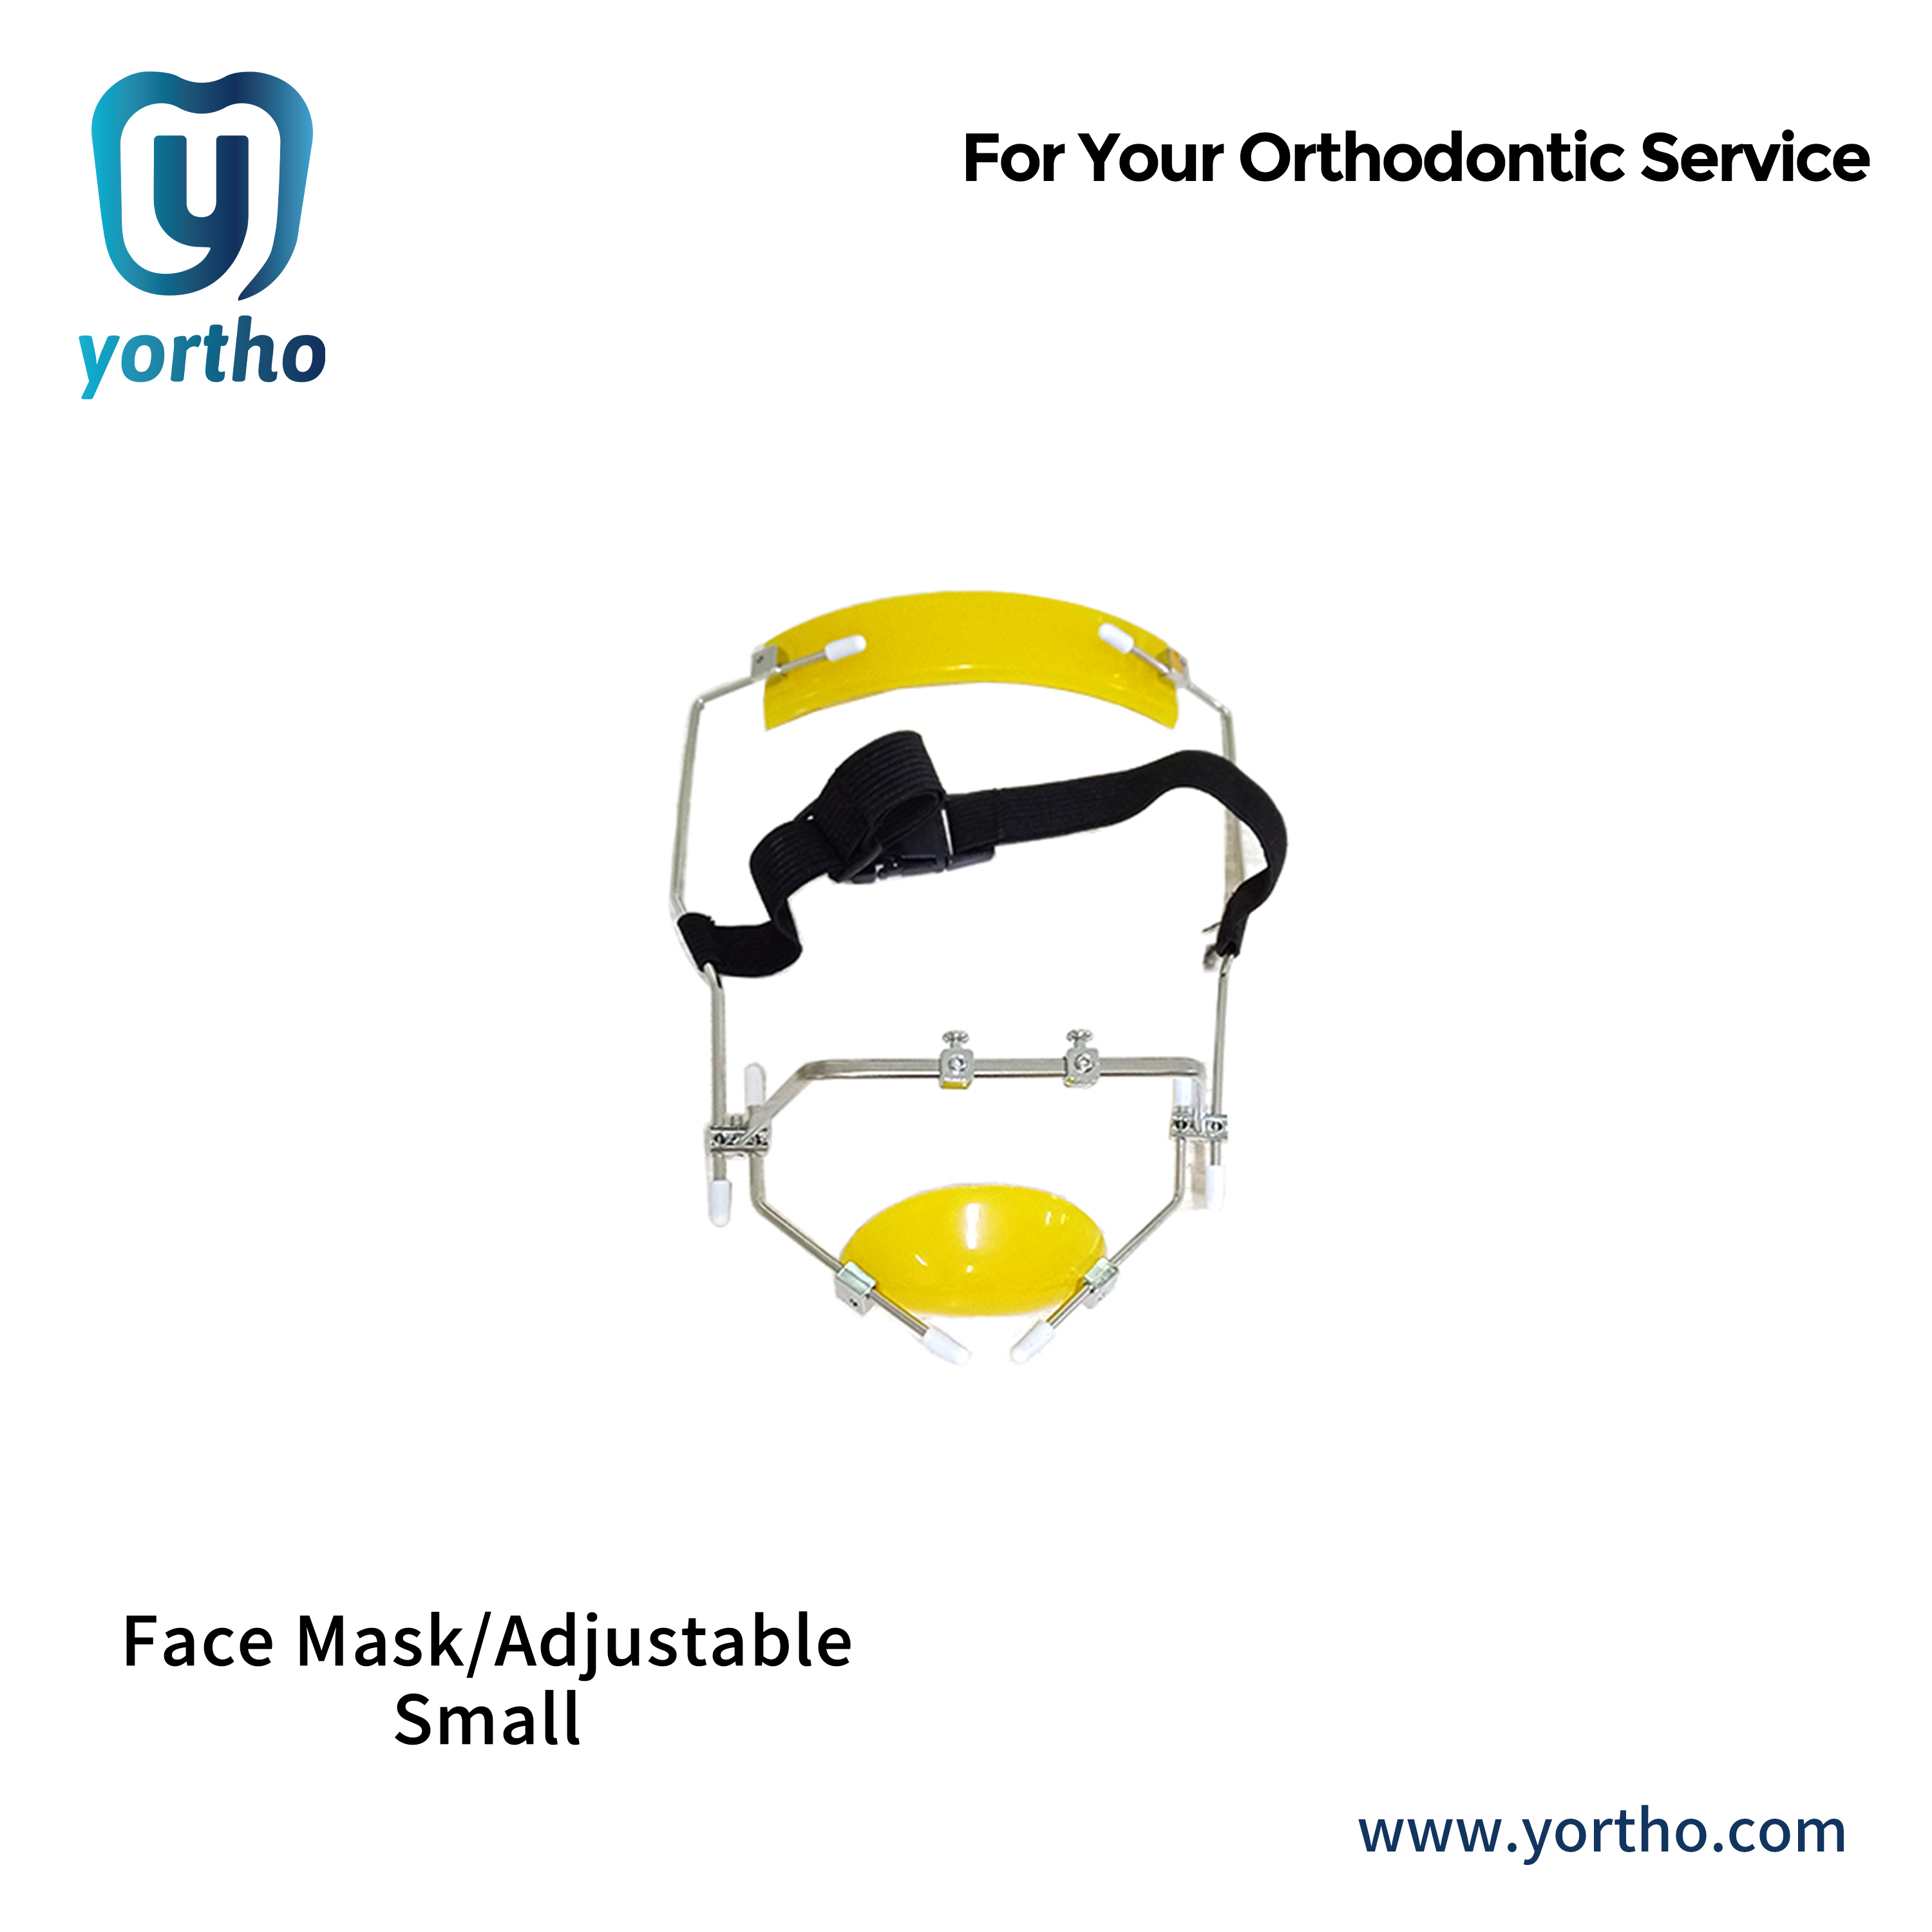 Face Mask/Adjustable